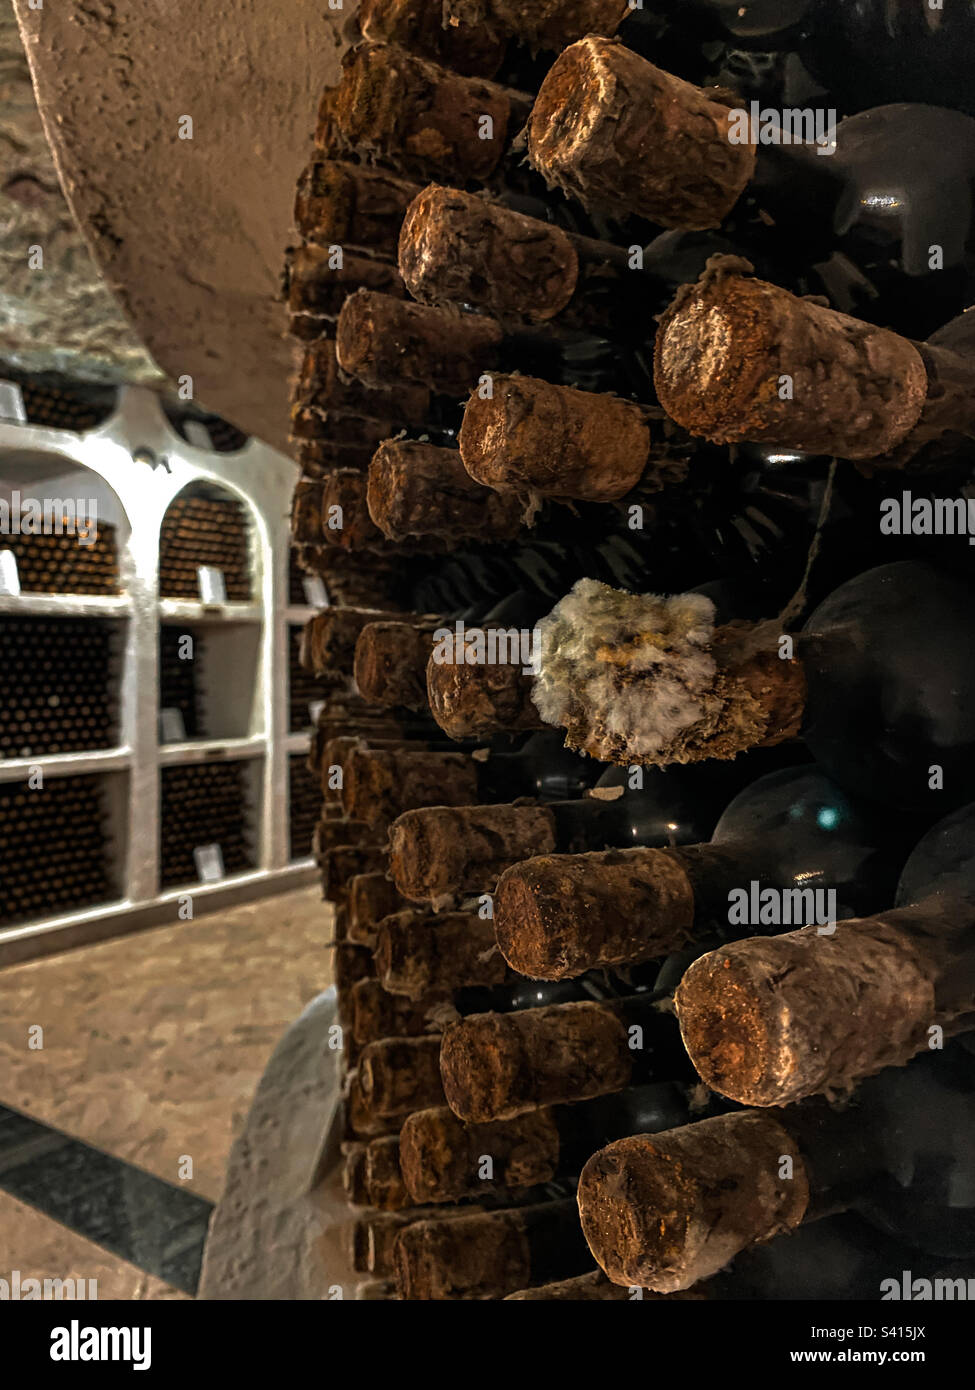 Anciennes bouteilles de vin à la cave de vinification Cricova Banque D'Images